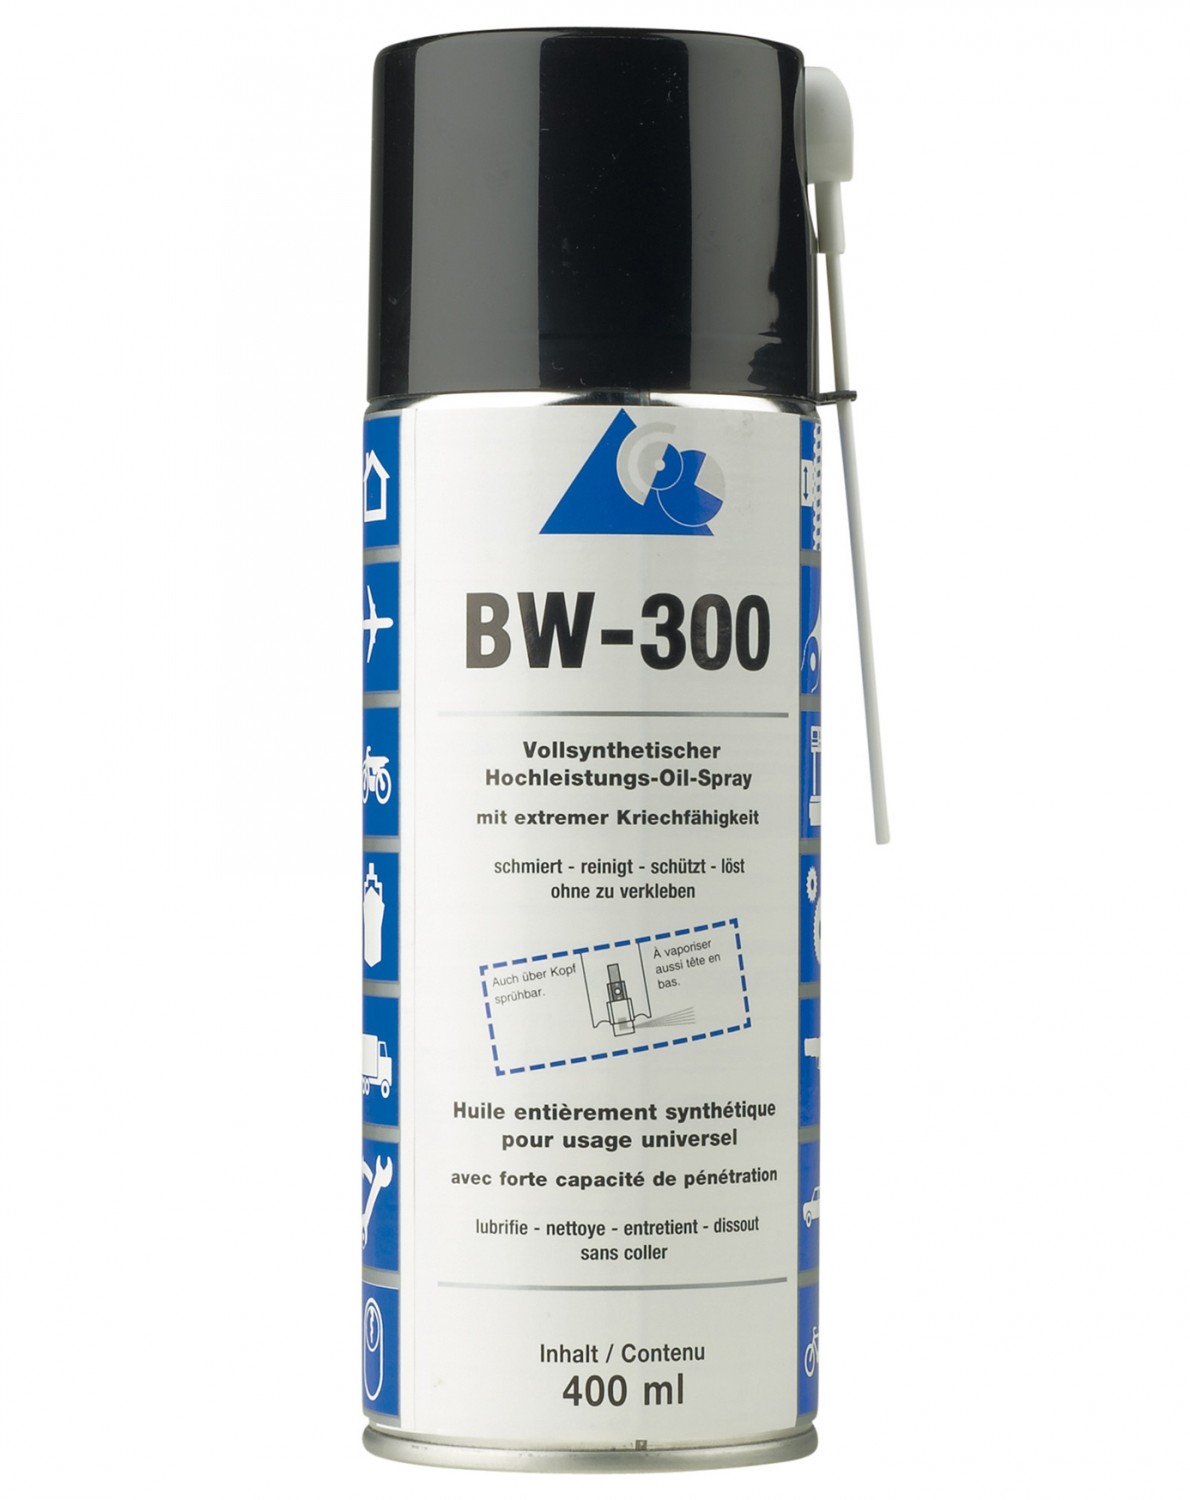 Rund ums Haus Brinkmann + Wecker Hochleistungs-Oil-Spray BW-300 im Test, Bild 2